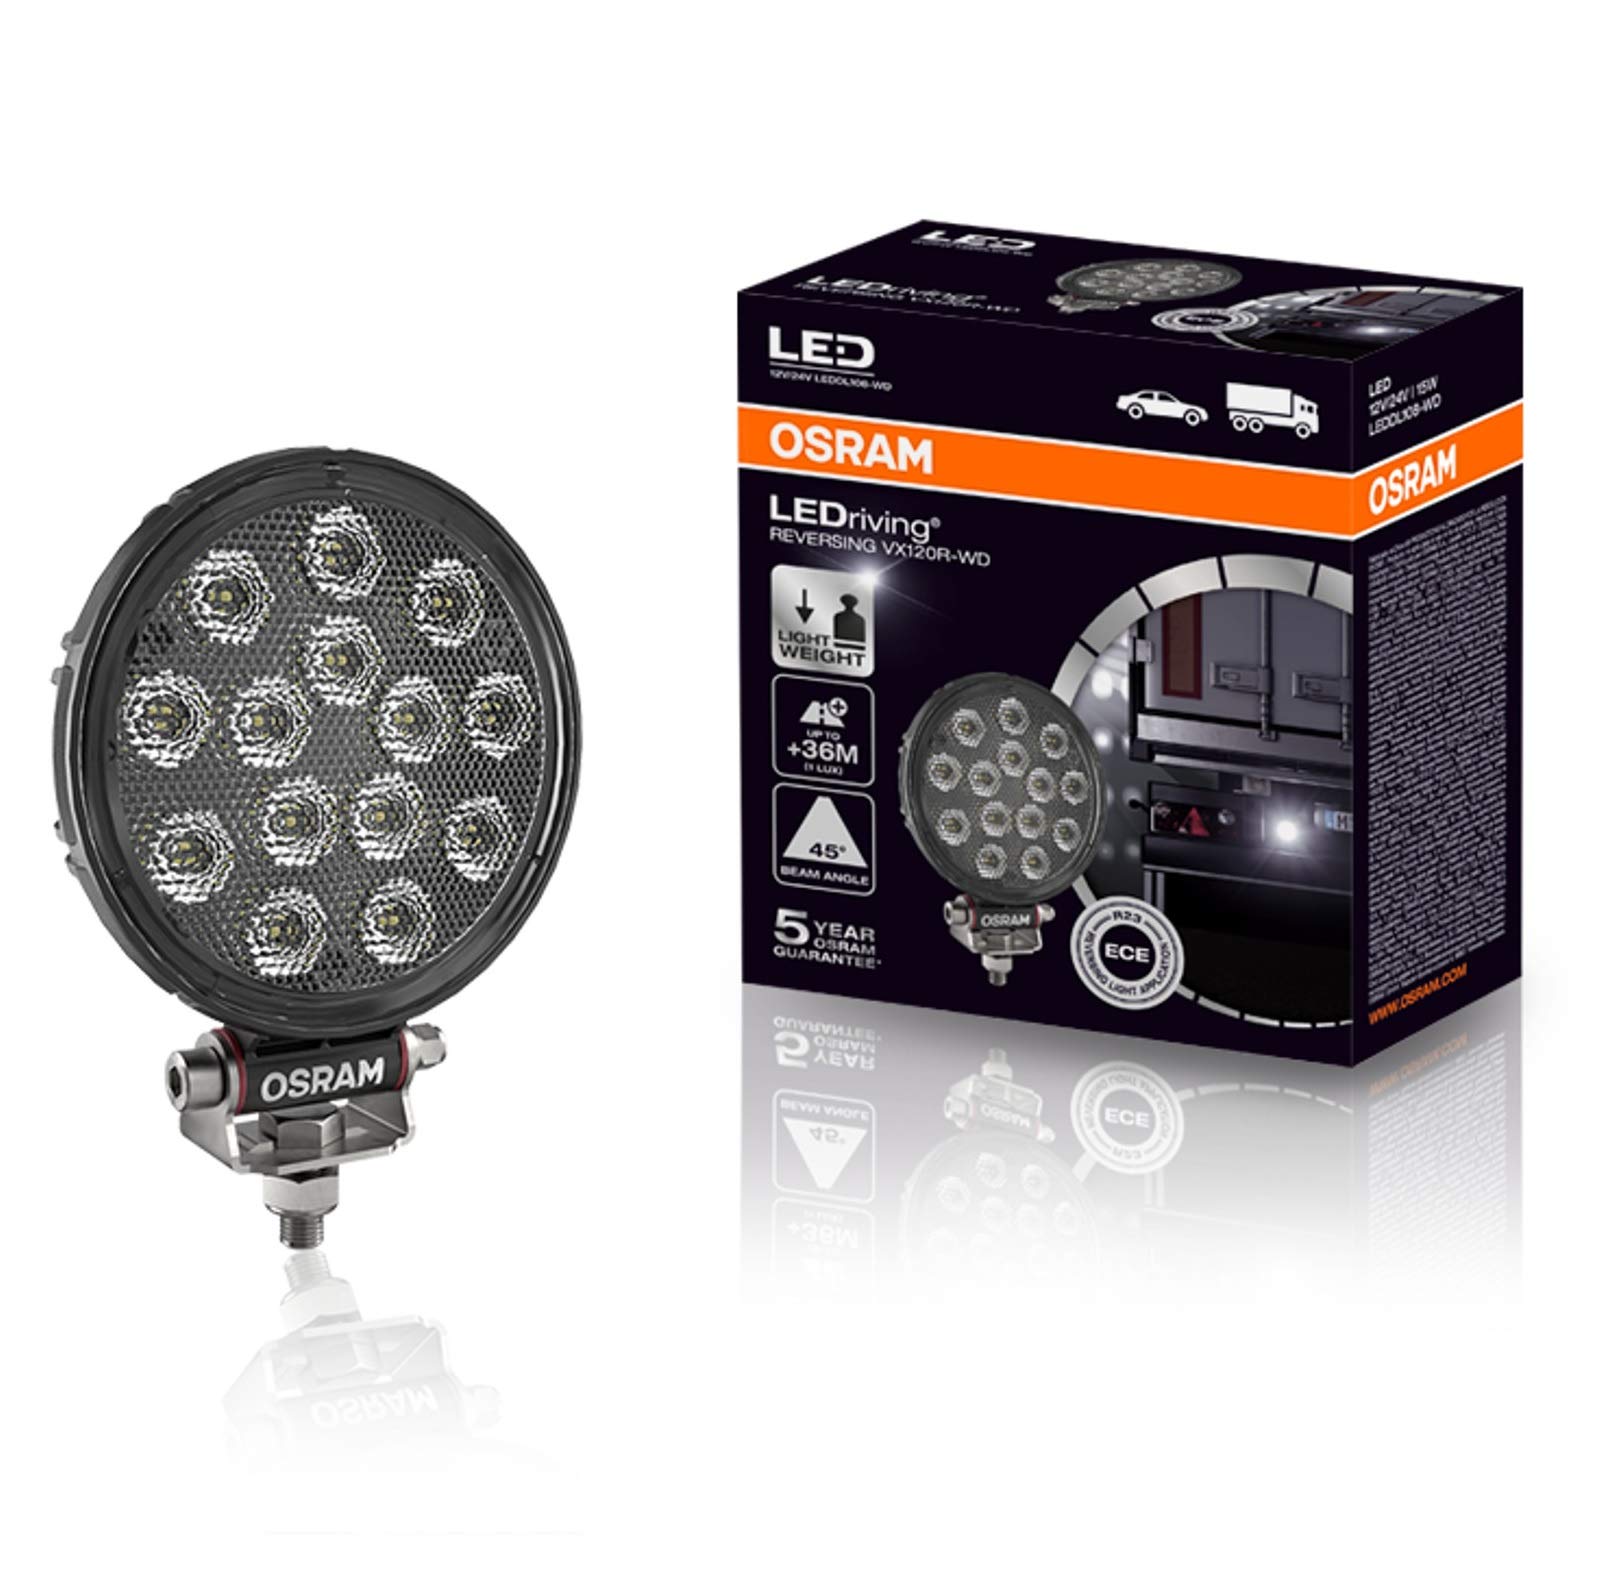 LEDriving REVERSING VX120R-WD, LED Rückfahrscheinwerfer, rund, LED Zusatzscheinwerfer mit ECE Zulassung von Osram